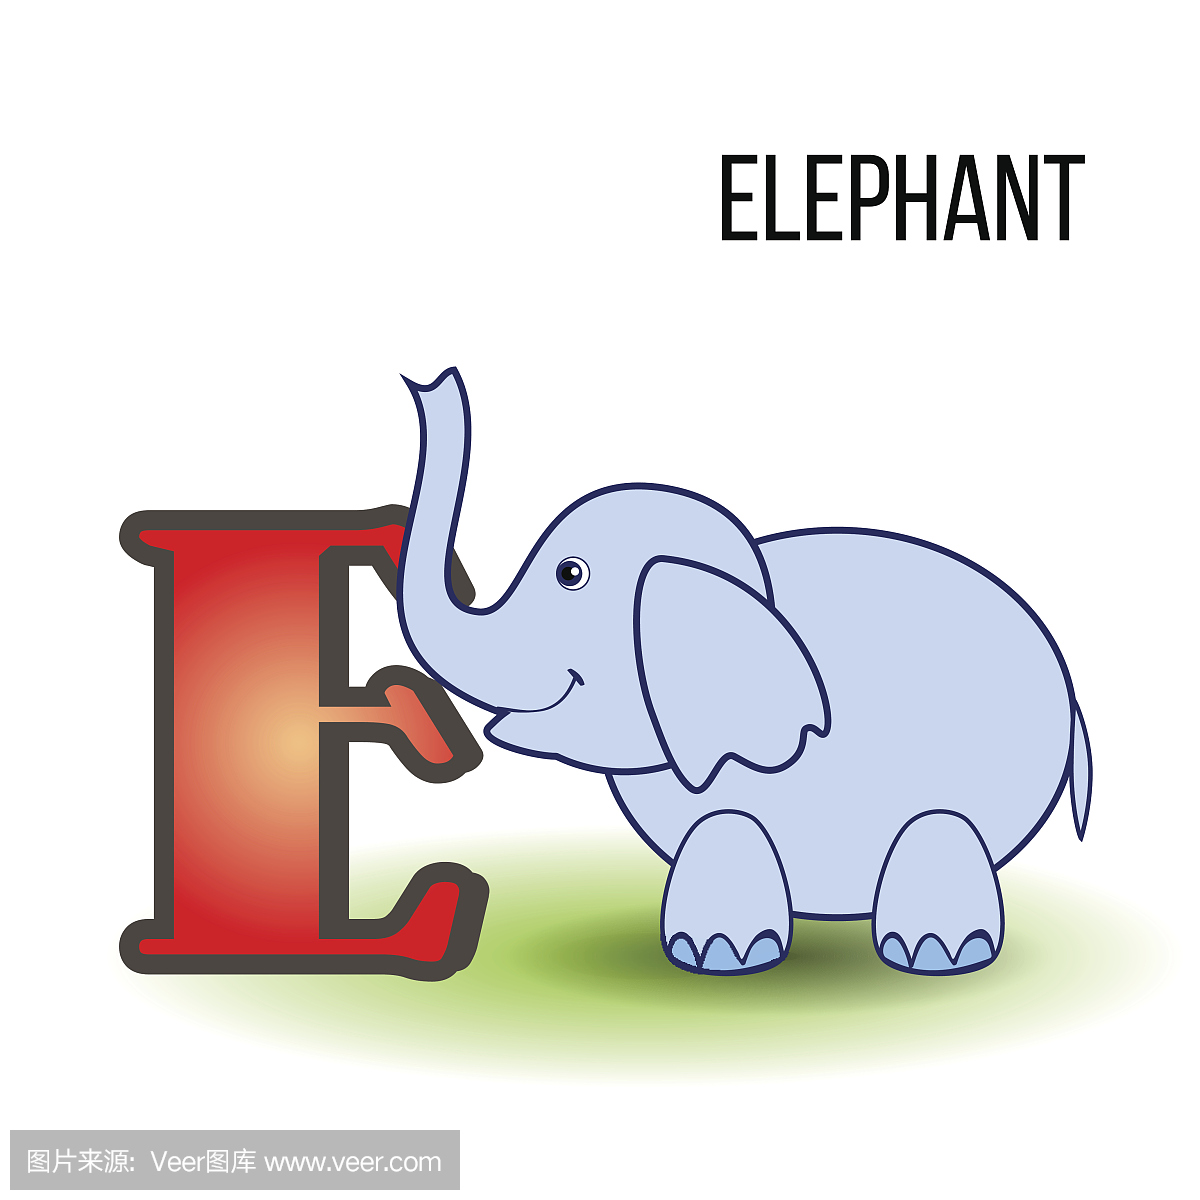 可爱的动物园英文字母E与大象卡通,矢量彩色插